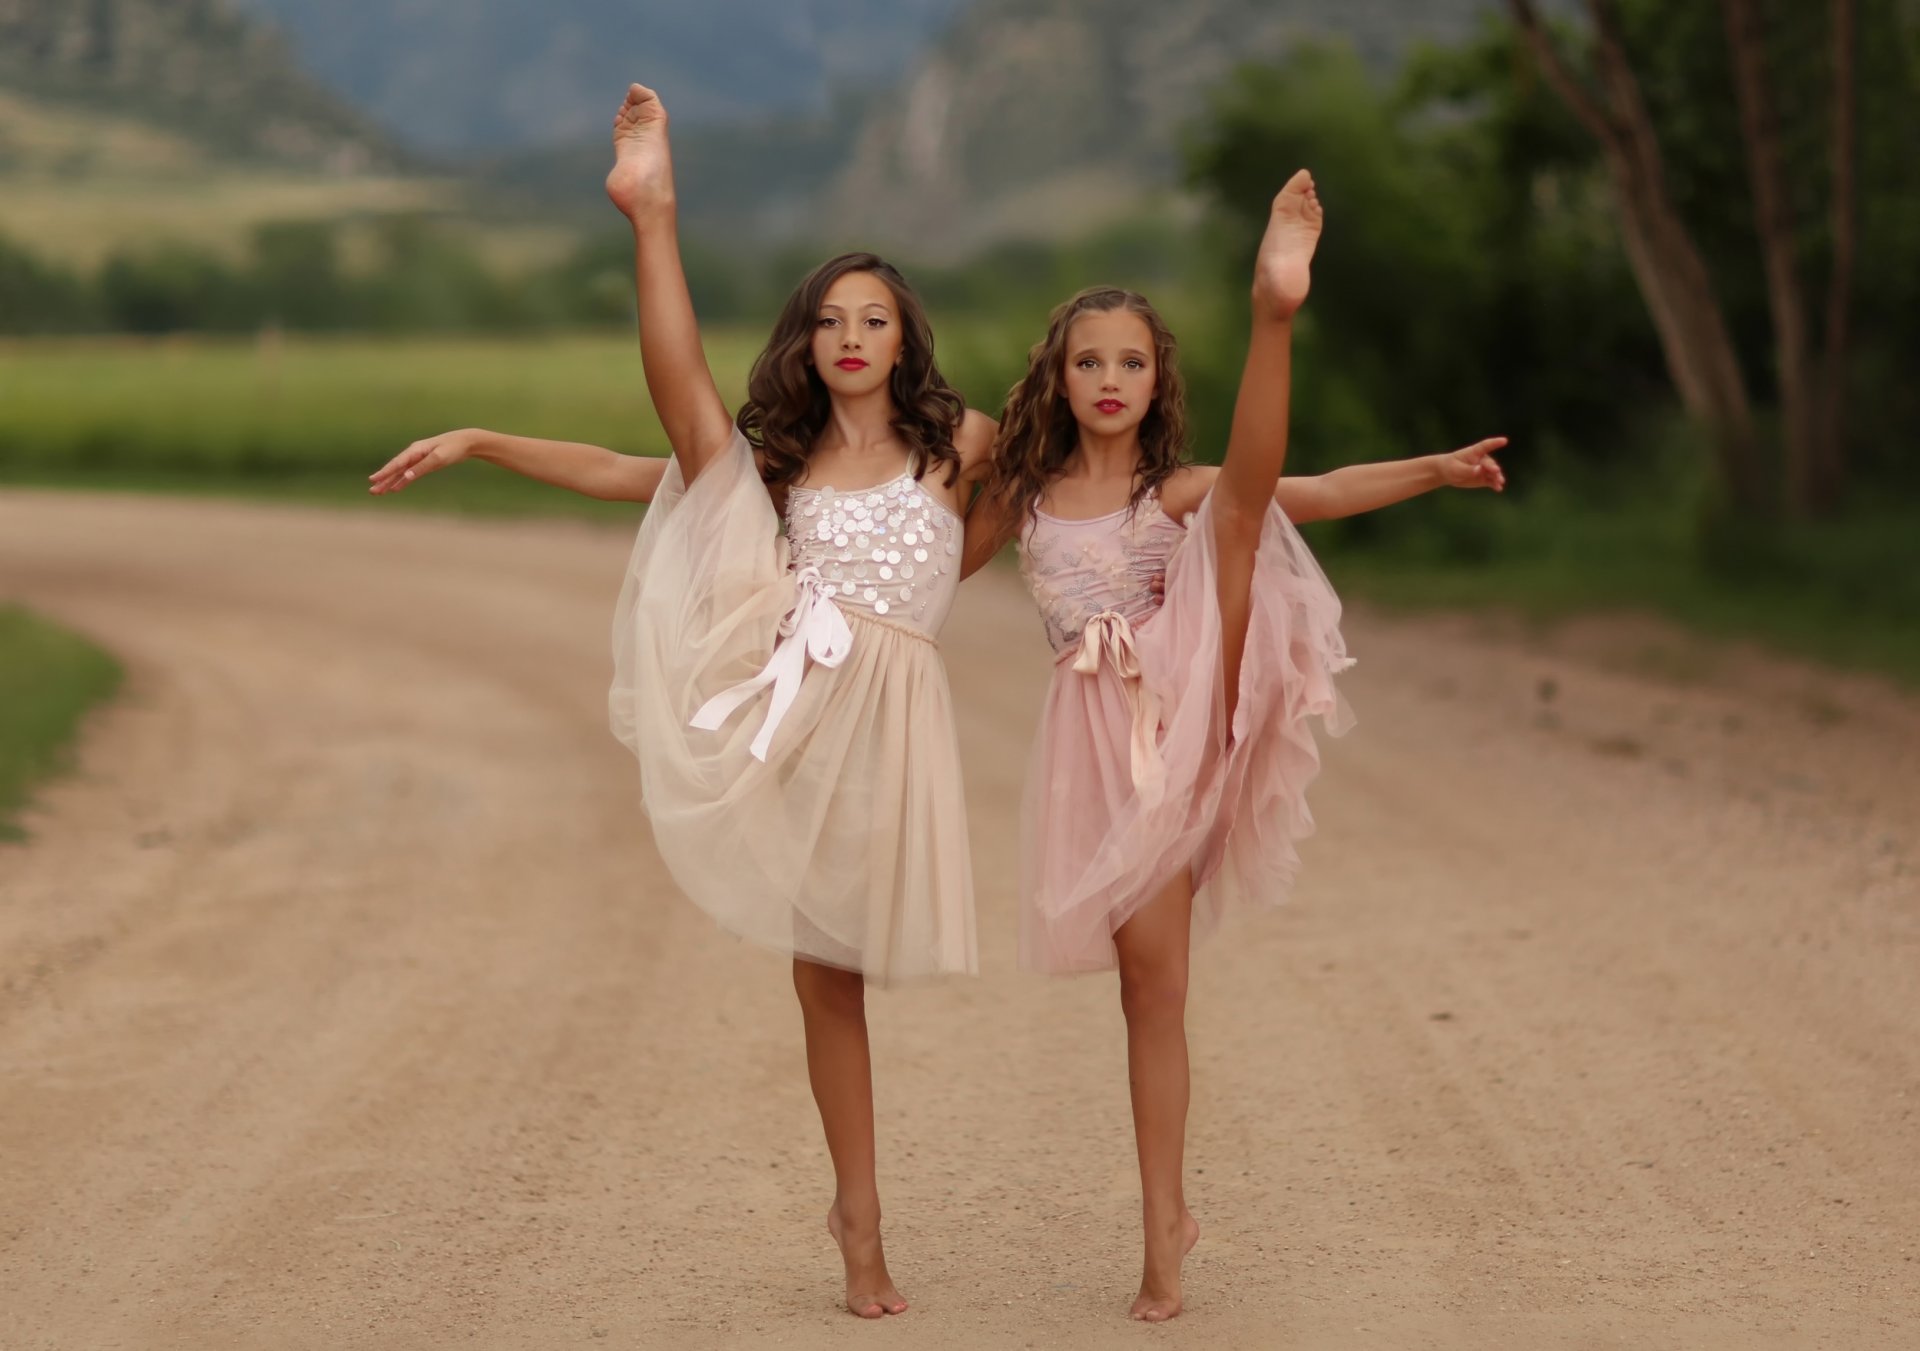 Две танцующие девочки на фоне природы Обои на рабочий стол 